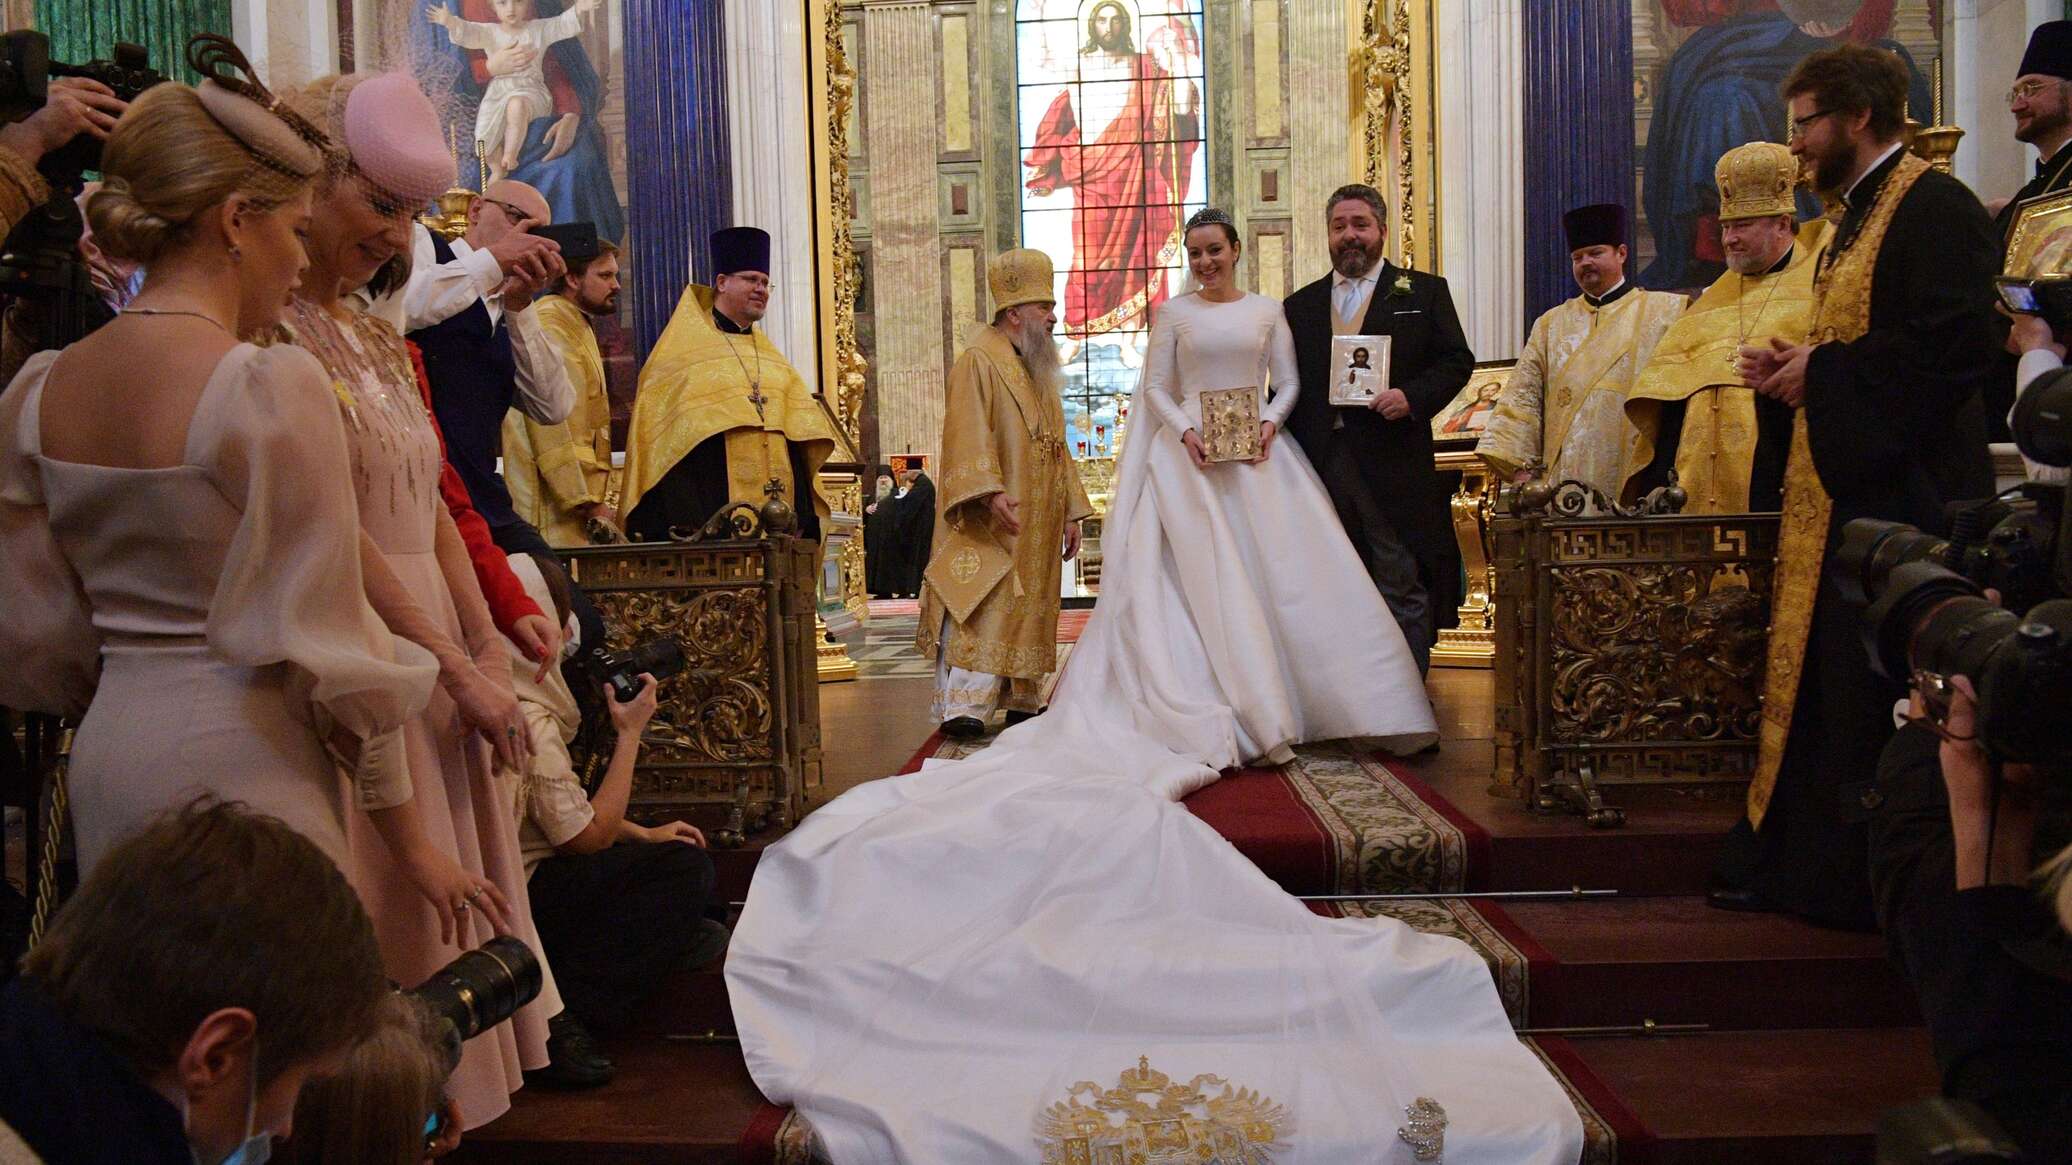 георгий романов венчание в исаакиевском соборе фото